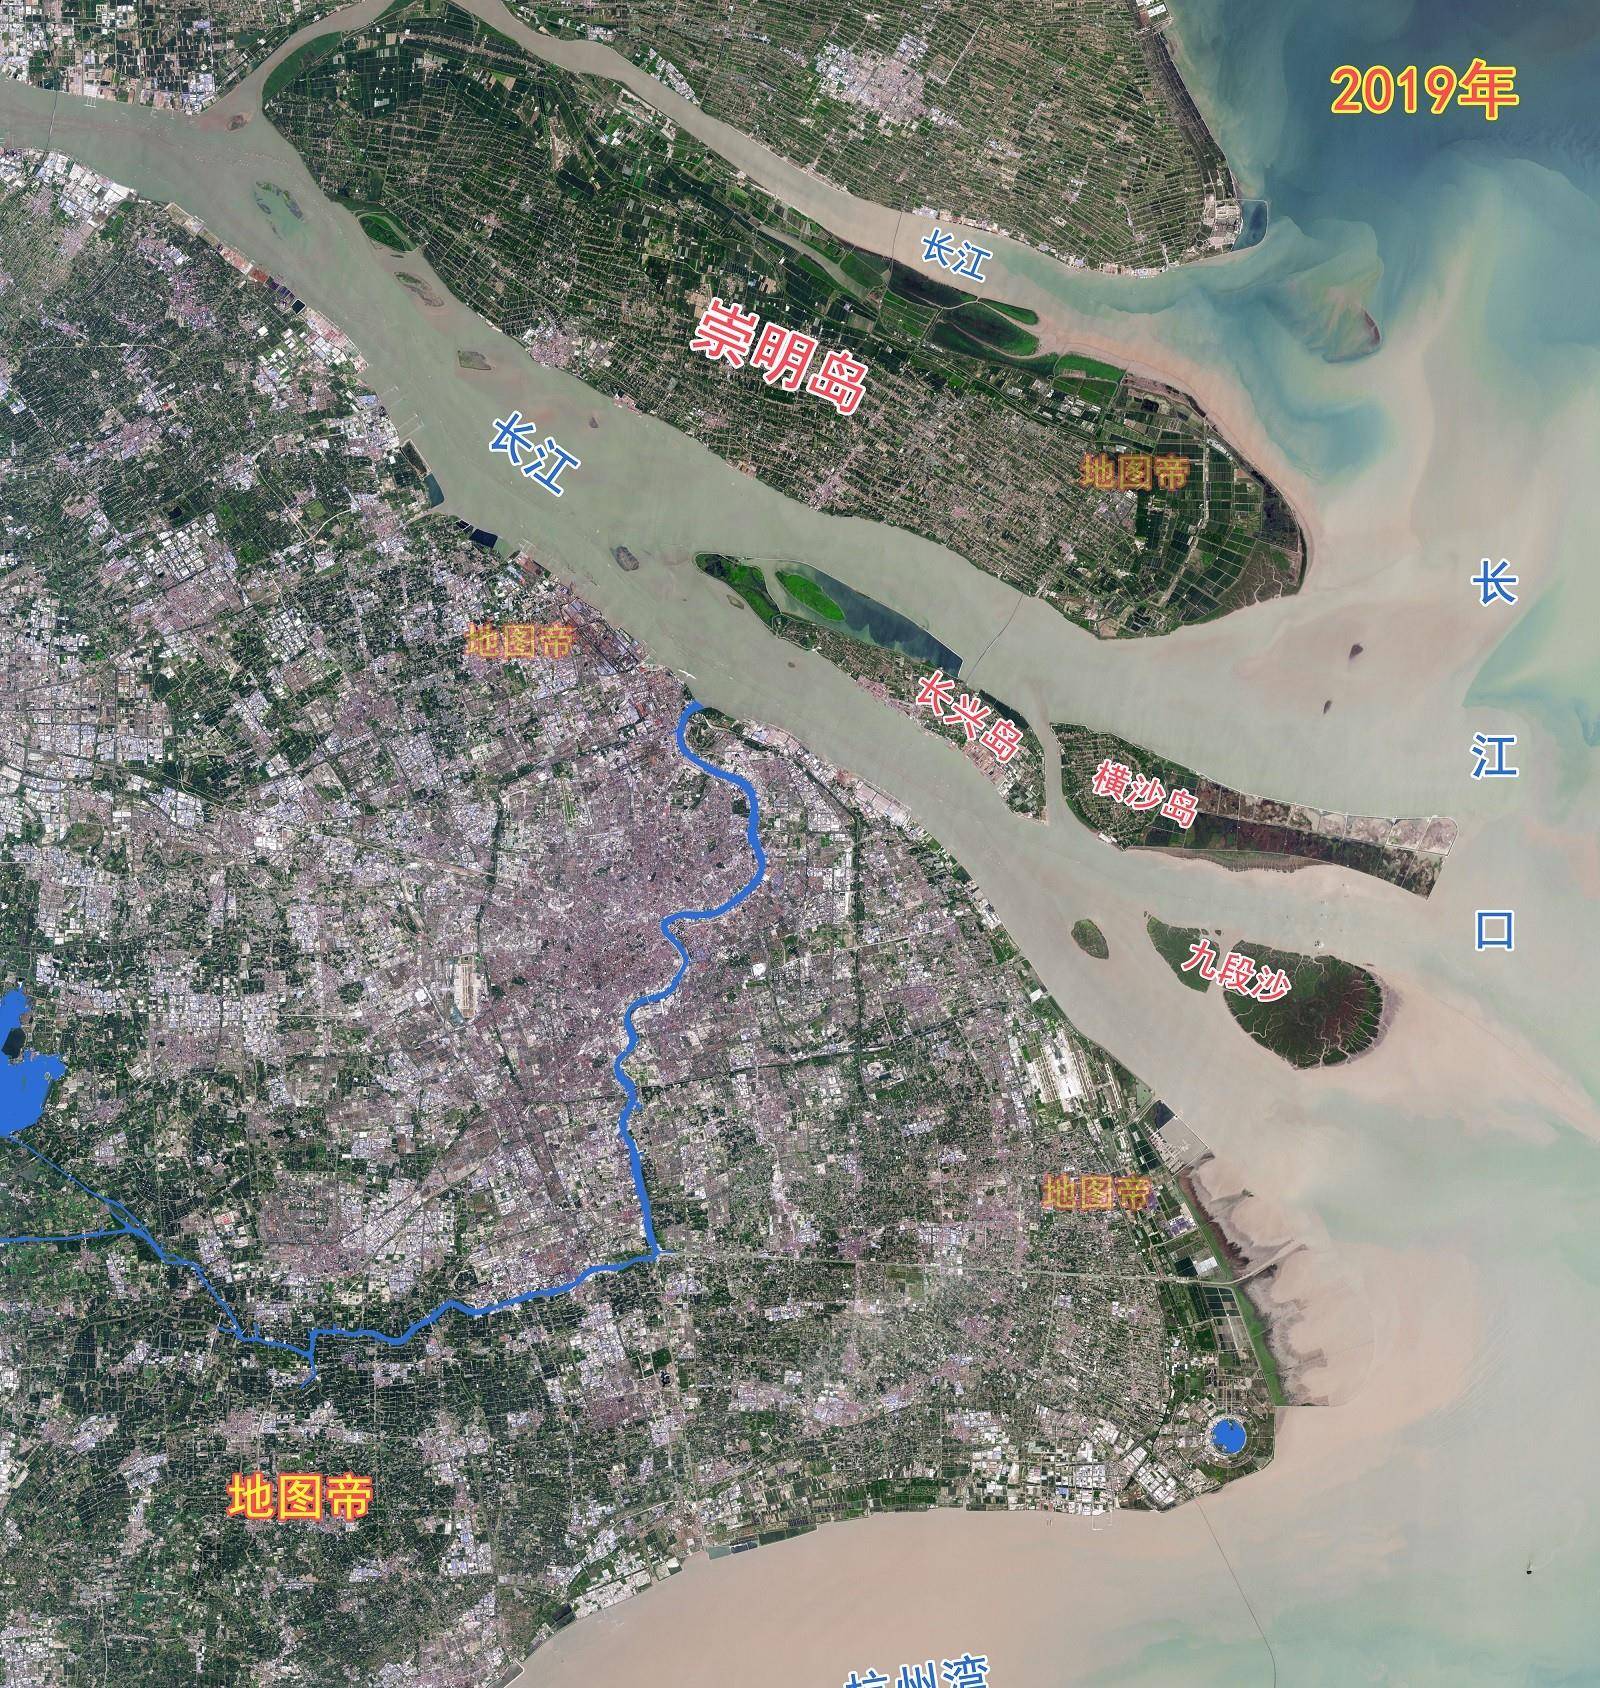 但黄浦江并不是一条天然形成的江河,它与长江,黄河,珠江,黑龙江的最大